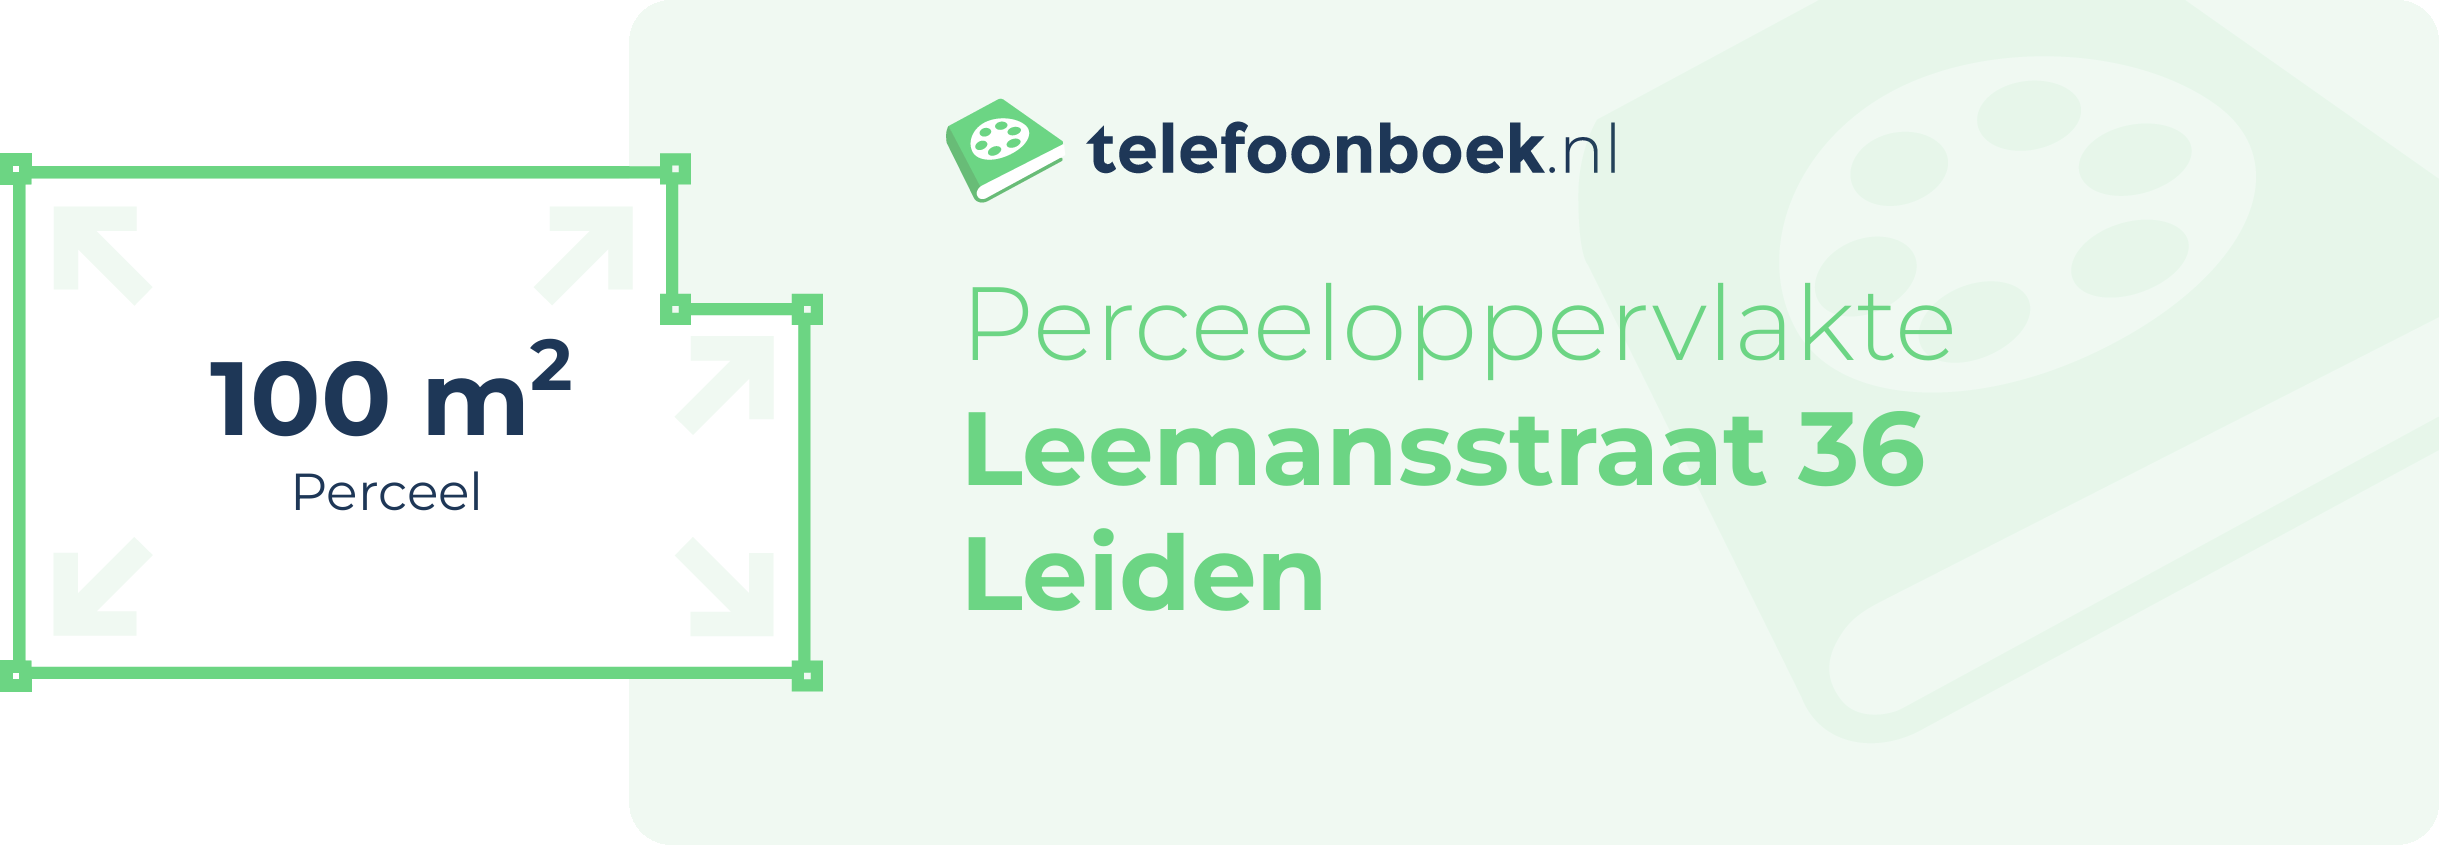 Perceeloppervlakte Leemansstraat 36 Leiden